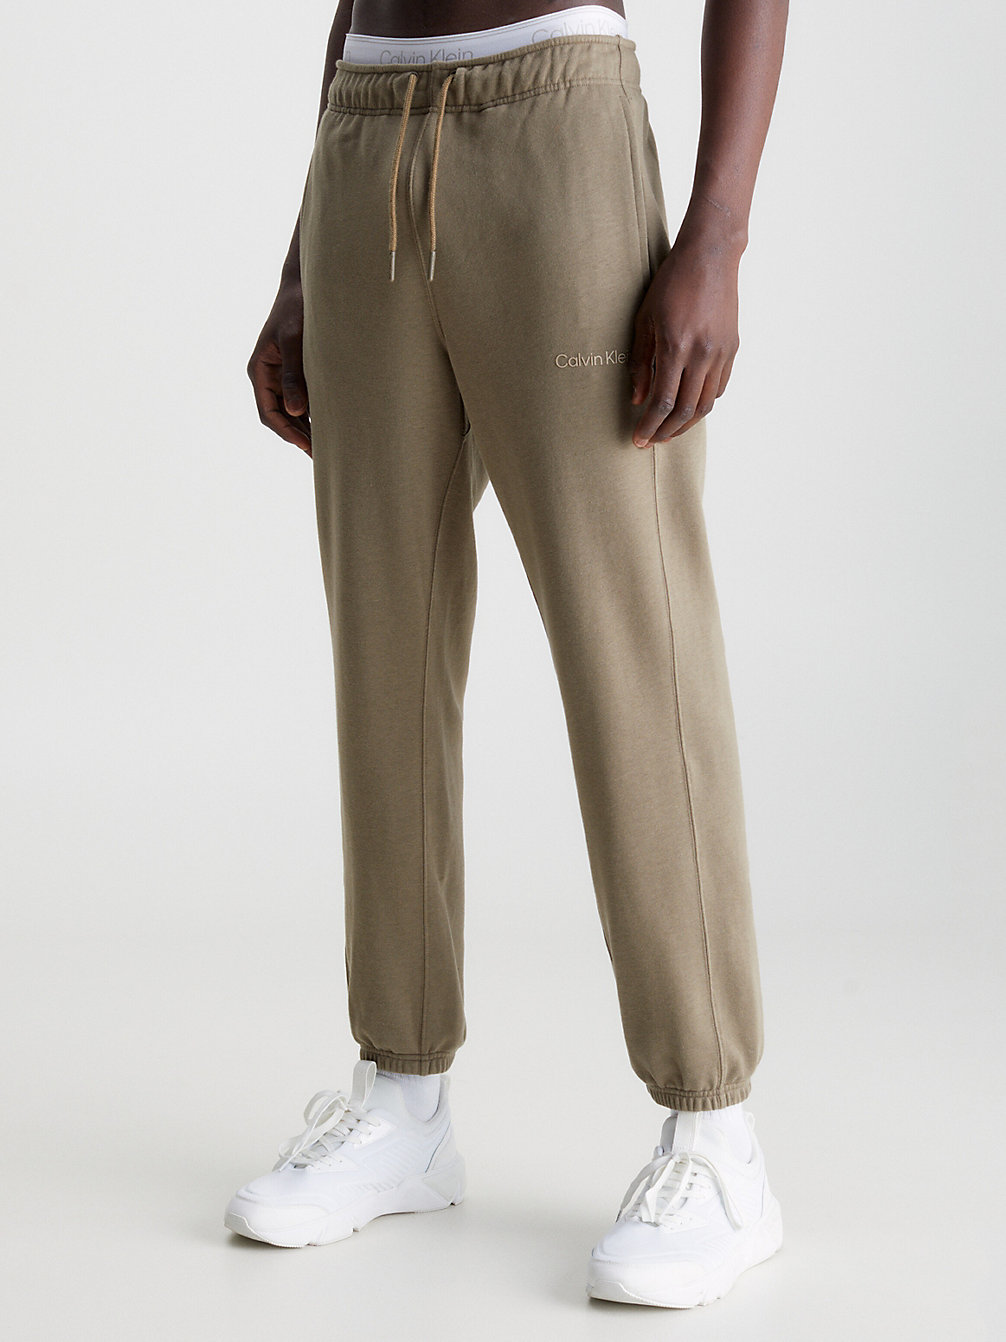 GRAY OLIVE > Spodnie Dresowe Z Bawełny Frotte > undefined Mężczyźni - Calvin Klein